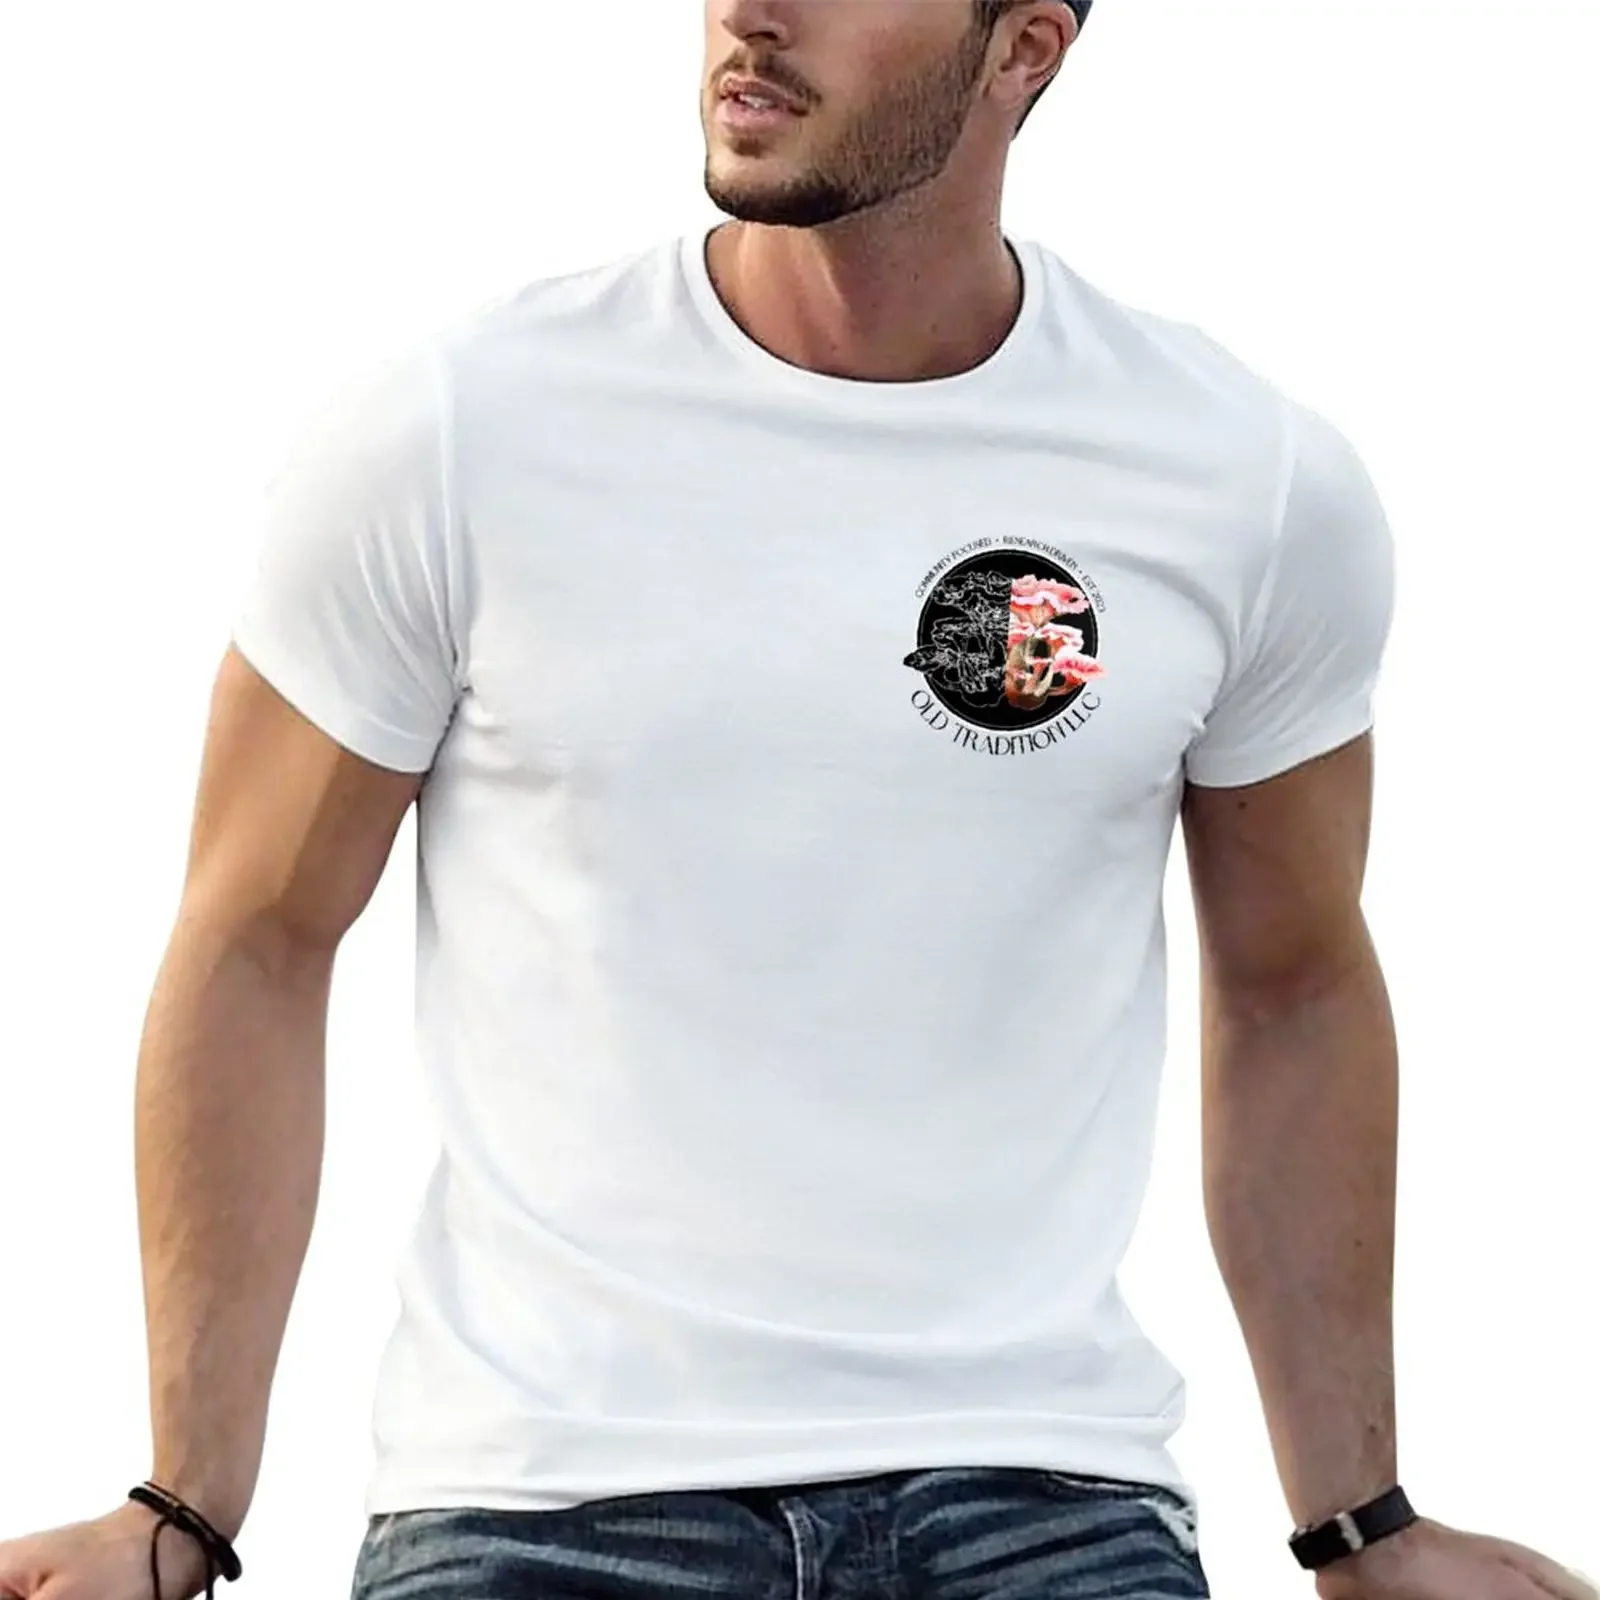 

Мужская футболка с логотипом старой традиции ООО (темный текст)